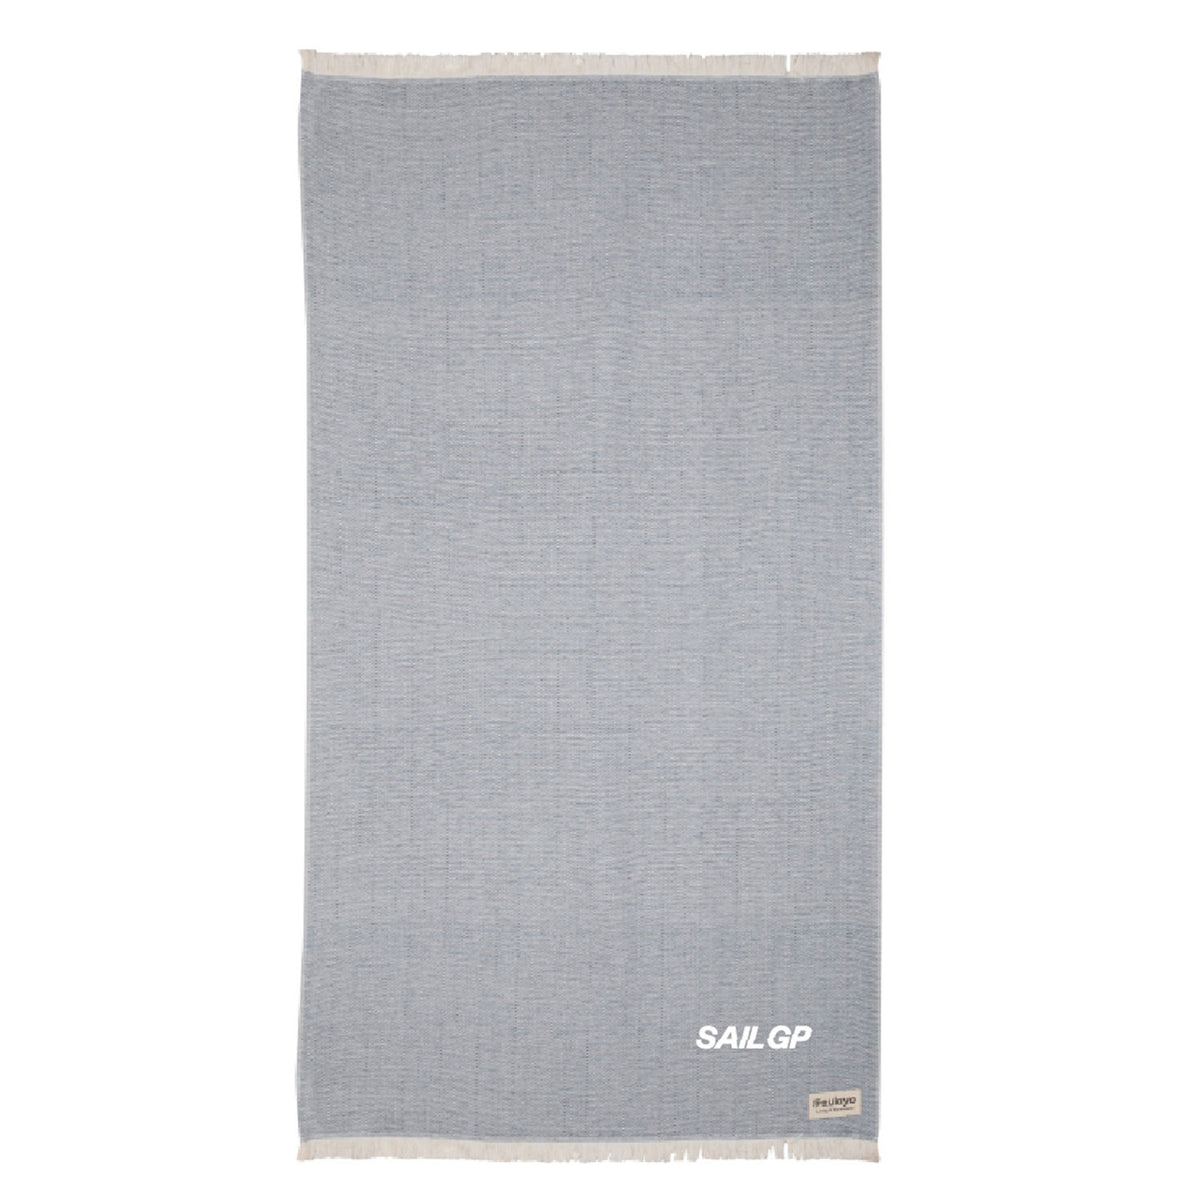 SailGP Herringbone Wool Grey Blanket